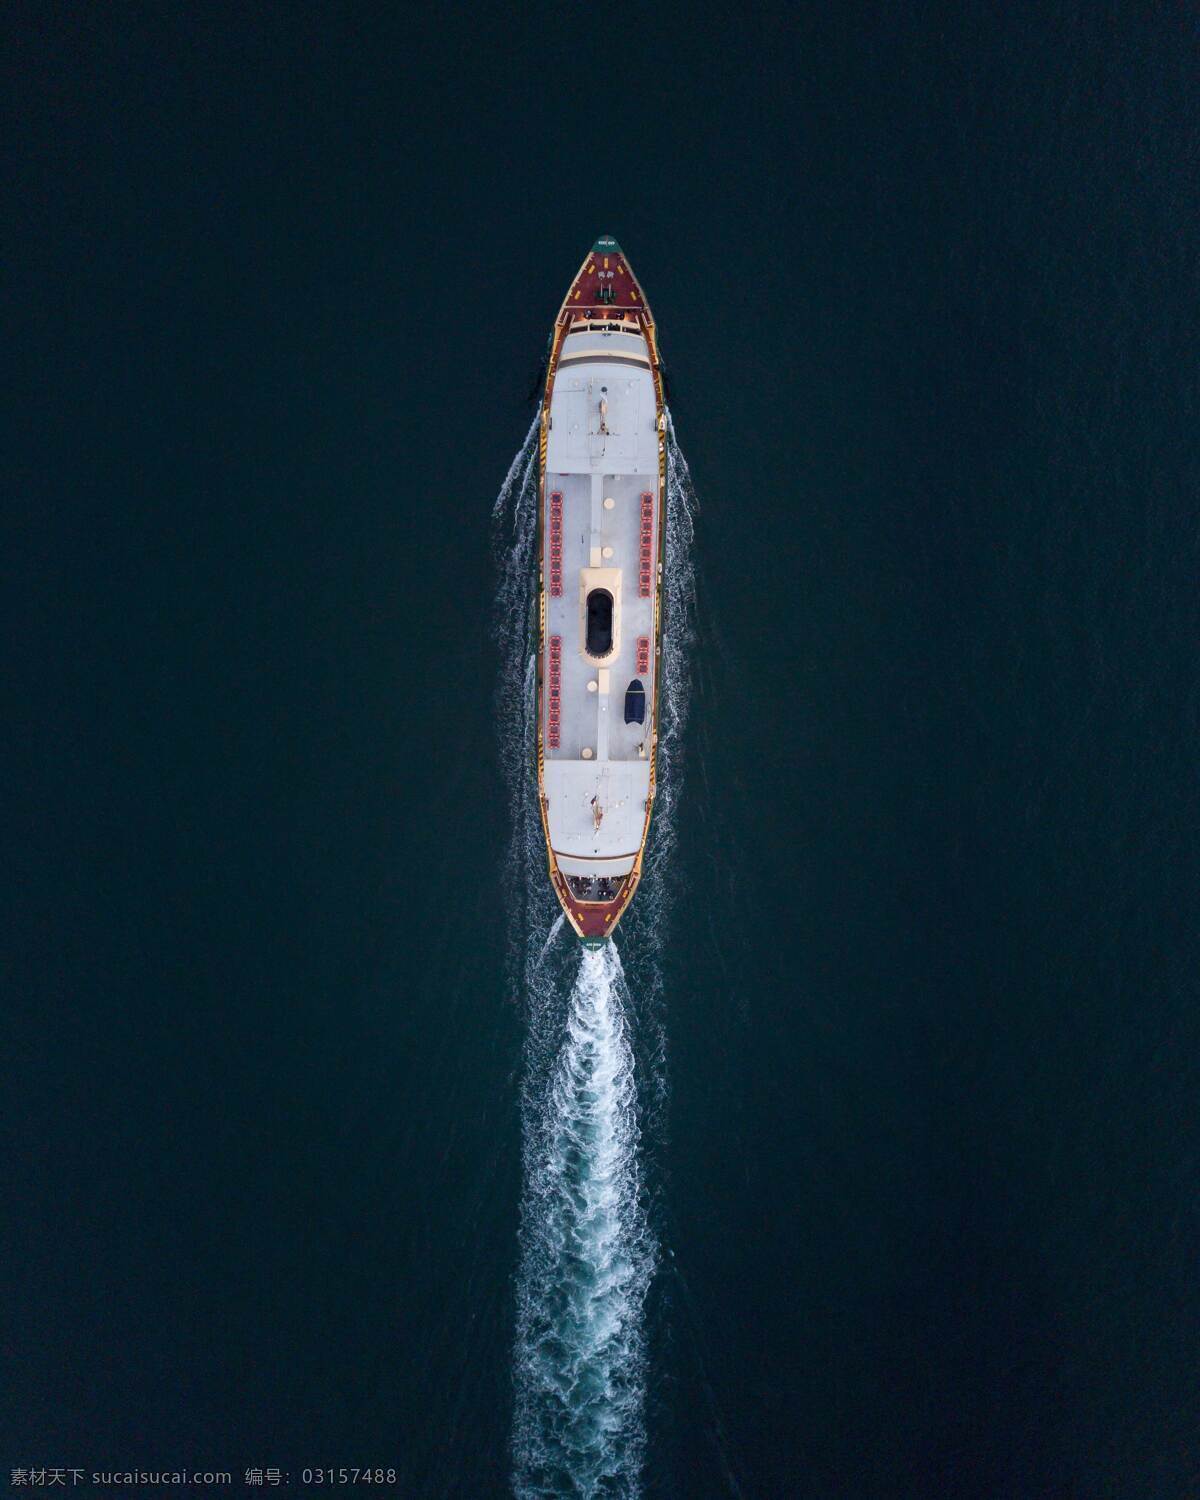 游船 旅游 风景 海洋 蓝 船 冲浪 自然景观 自然风景